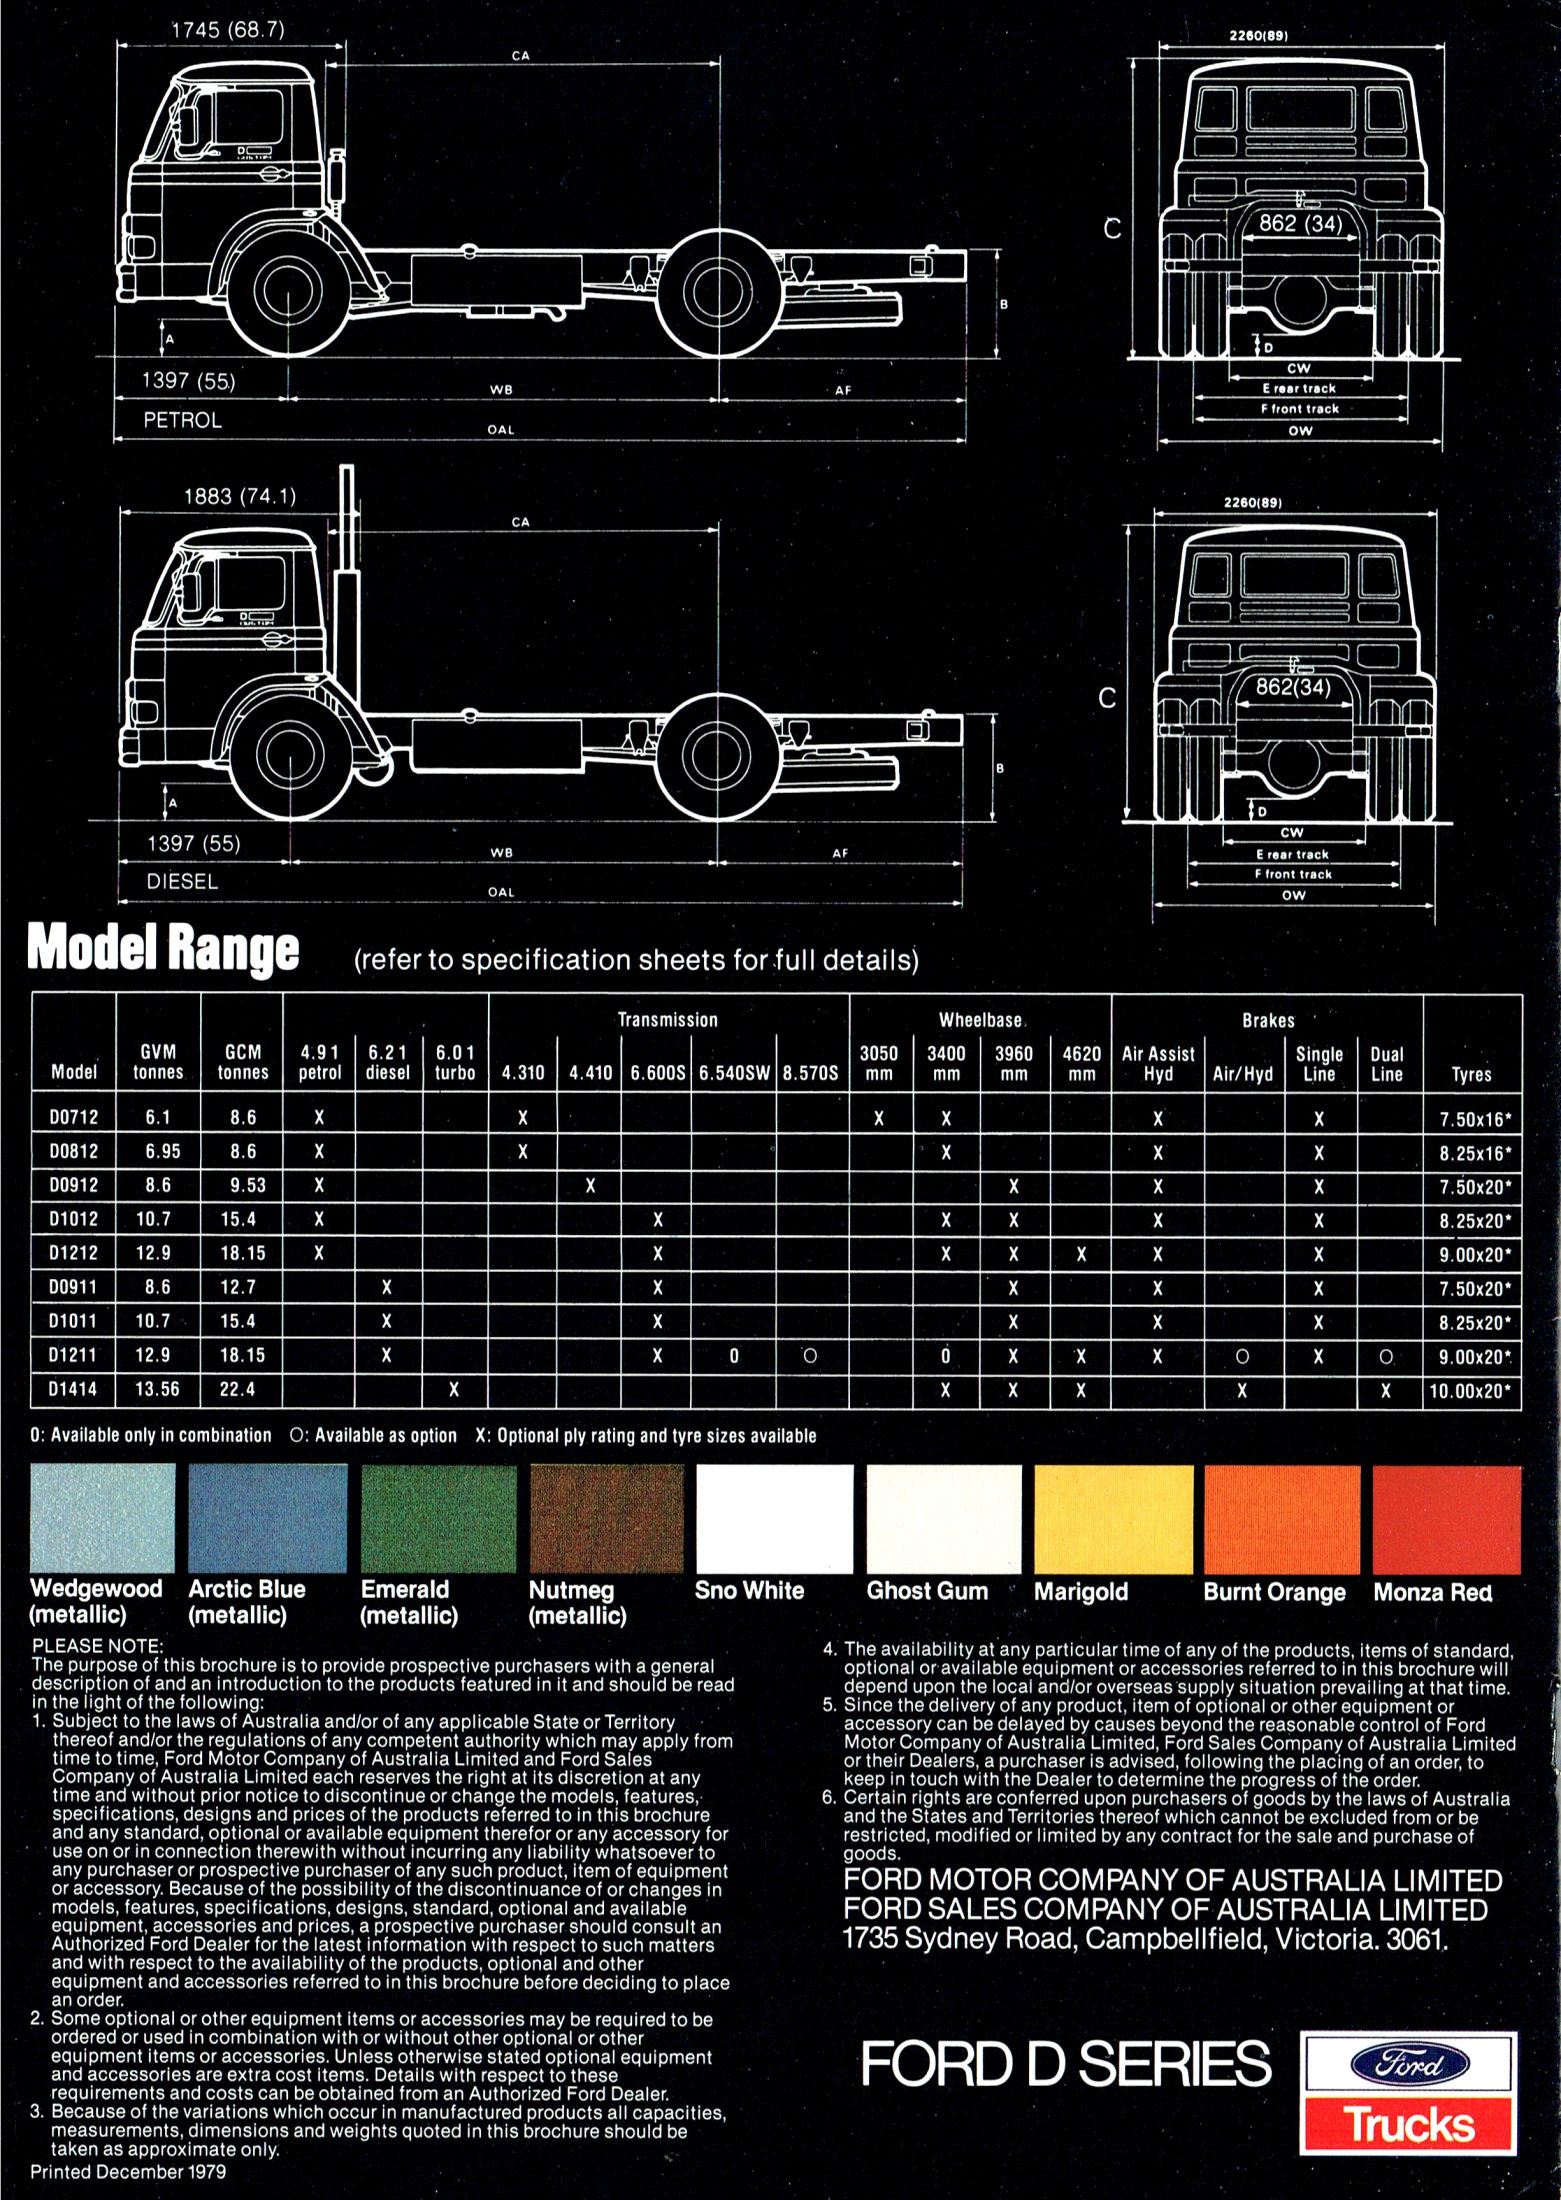 1979 Ford D Series Trucks (Aus)-08.jpg-2022-12-7 13.39.31